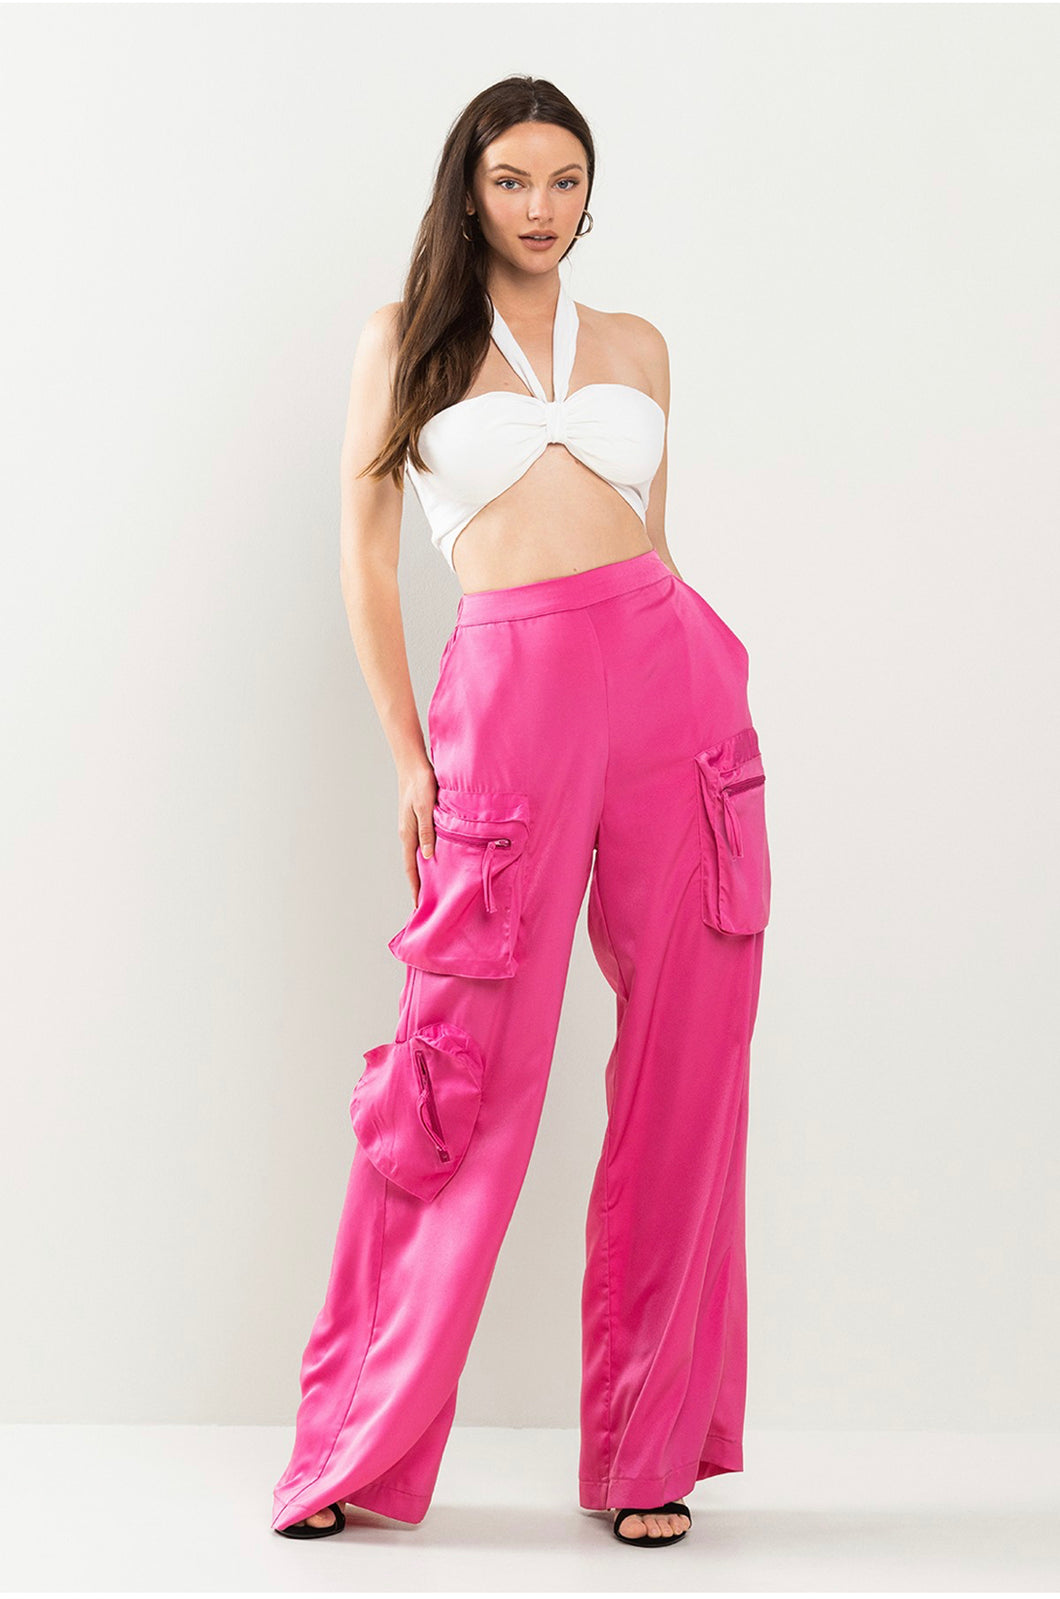 Cargos pink silk pants